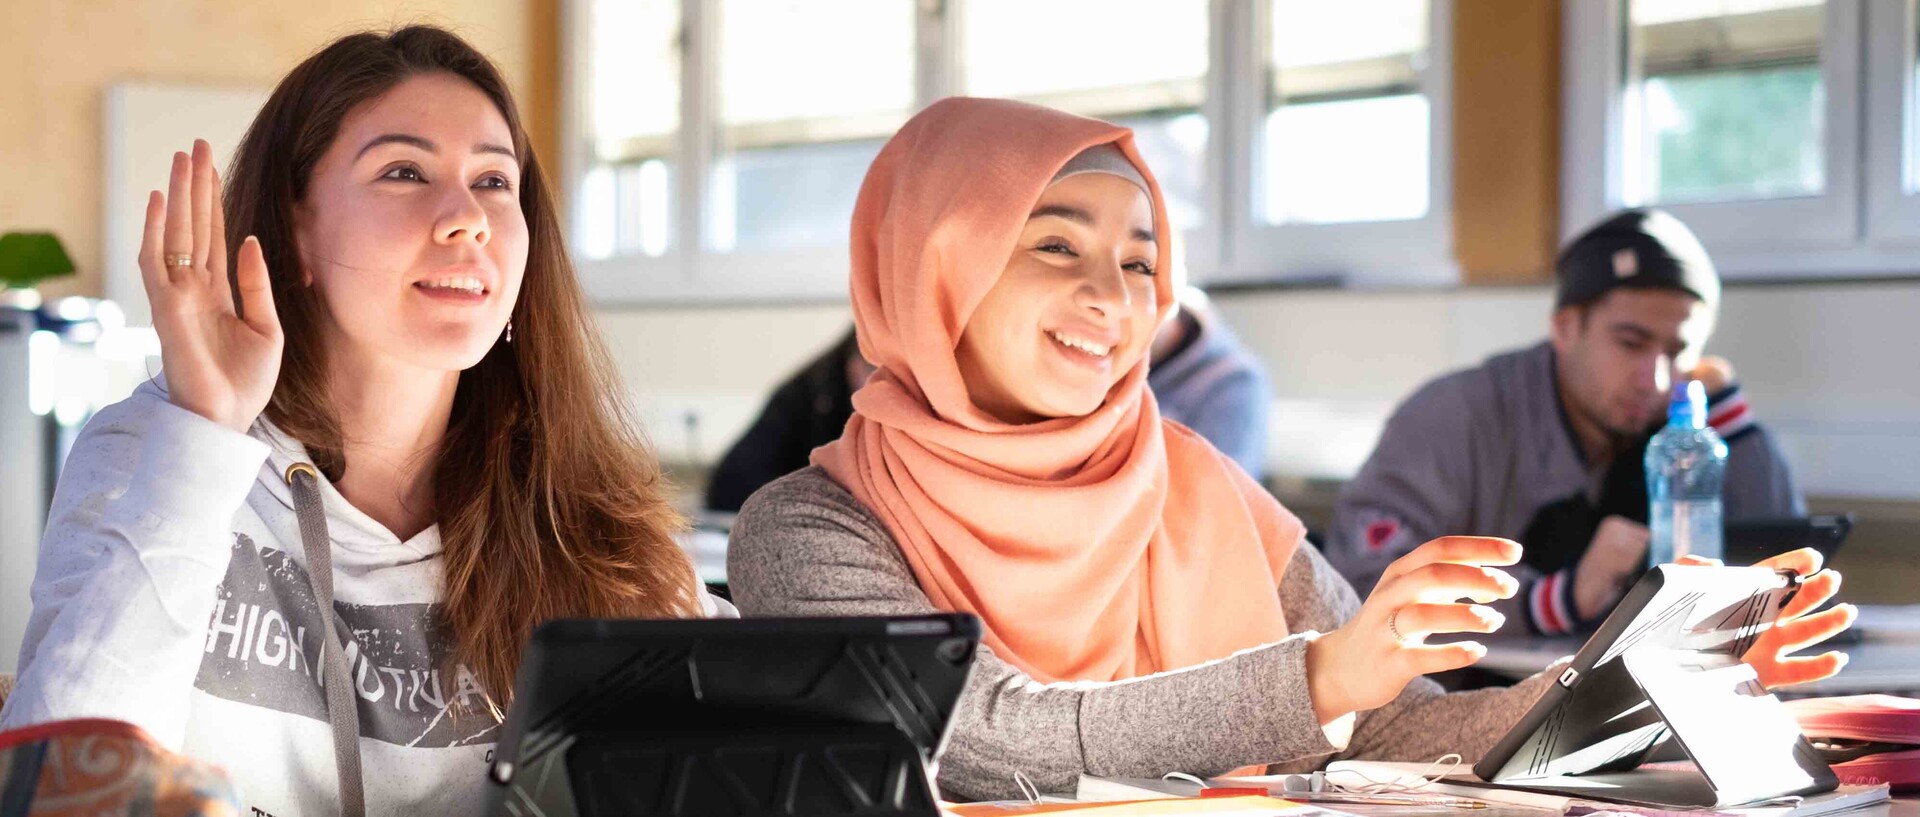 Zwei Schülerinnen sitzen in einem Klassenzimmer.  Eine hat lange offene Haare, die andere trägt ein apricotfarbenes Kopftuch.